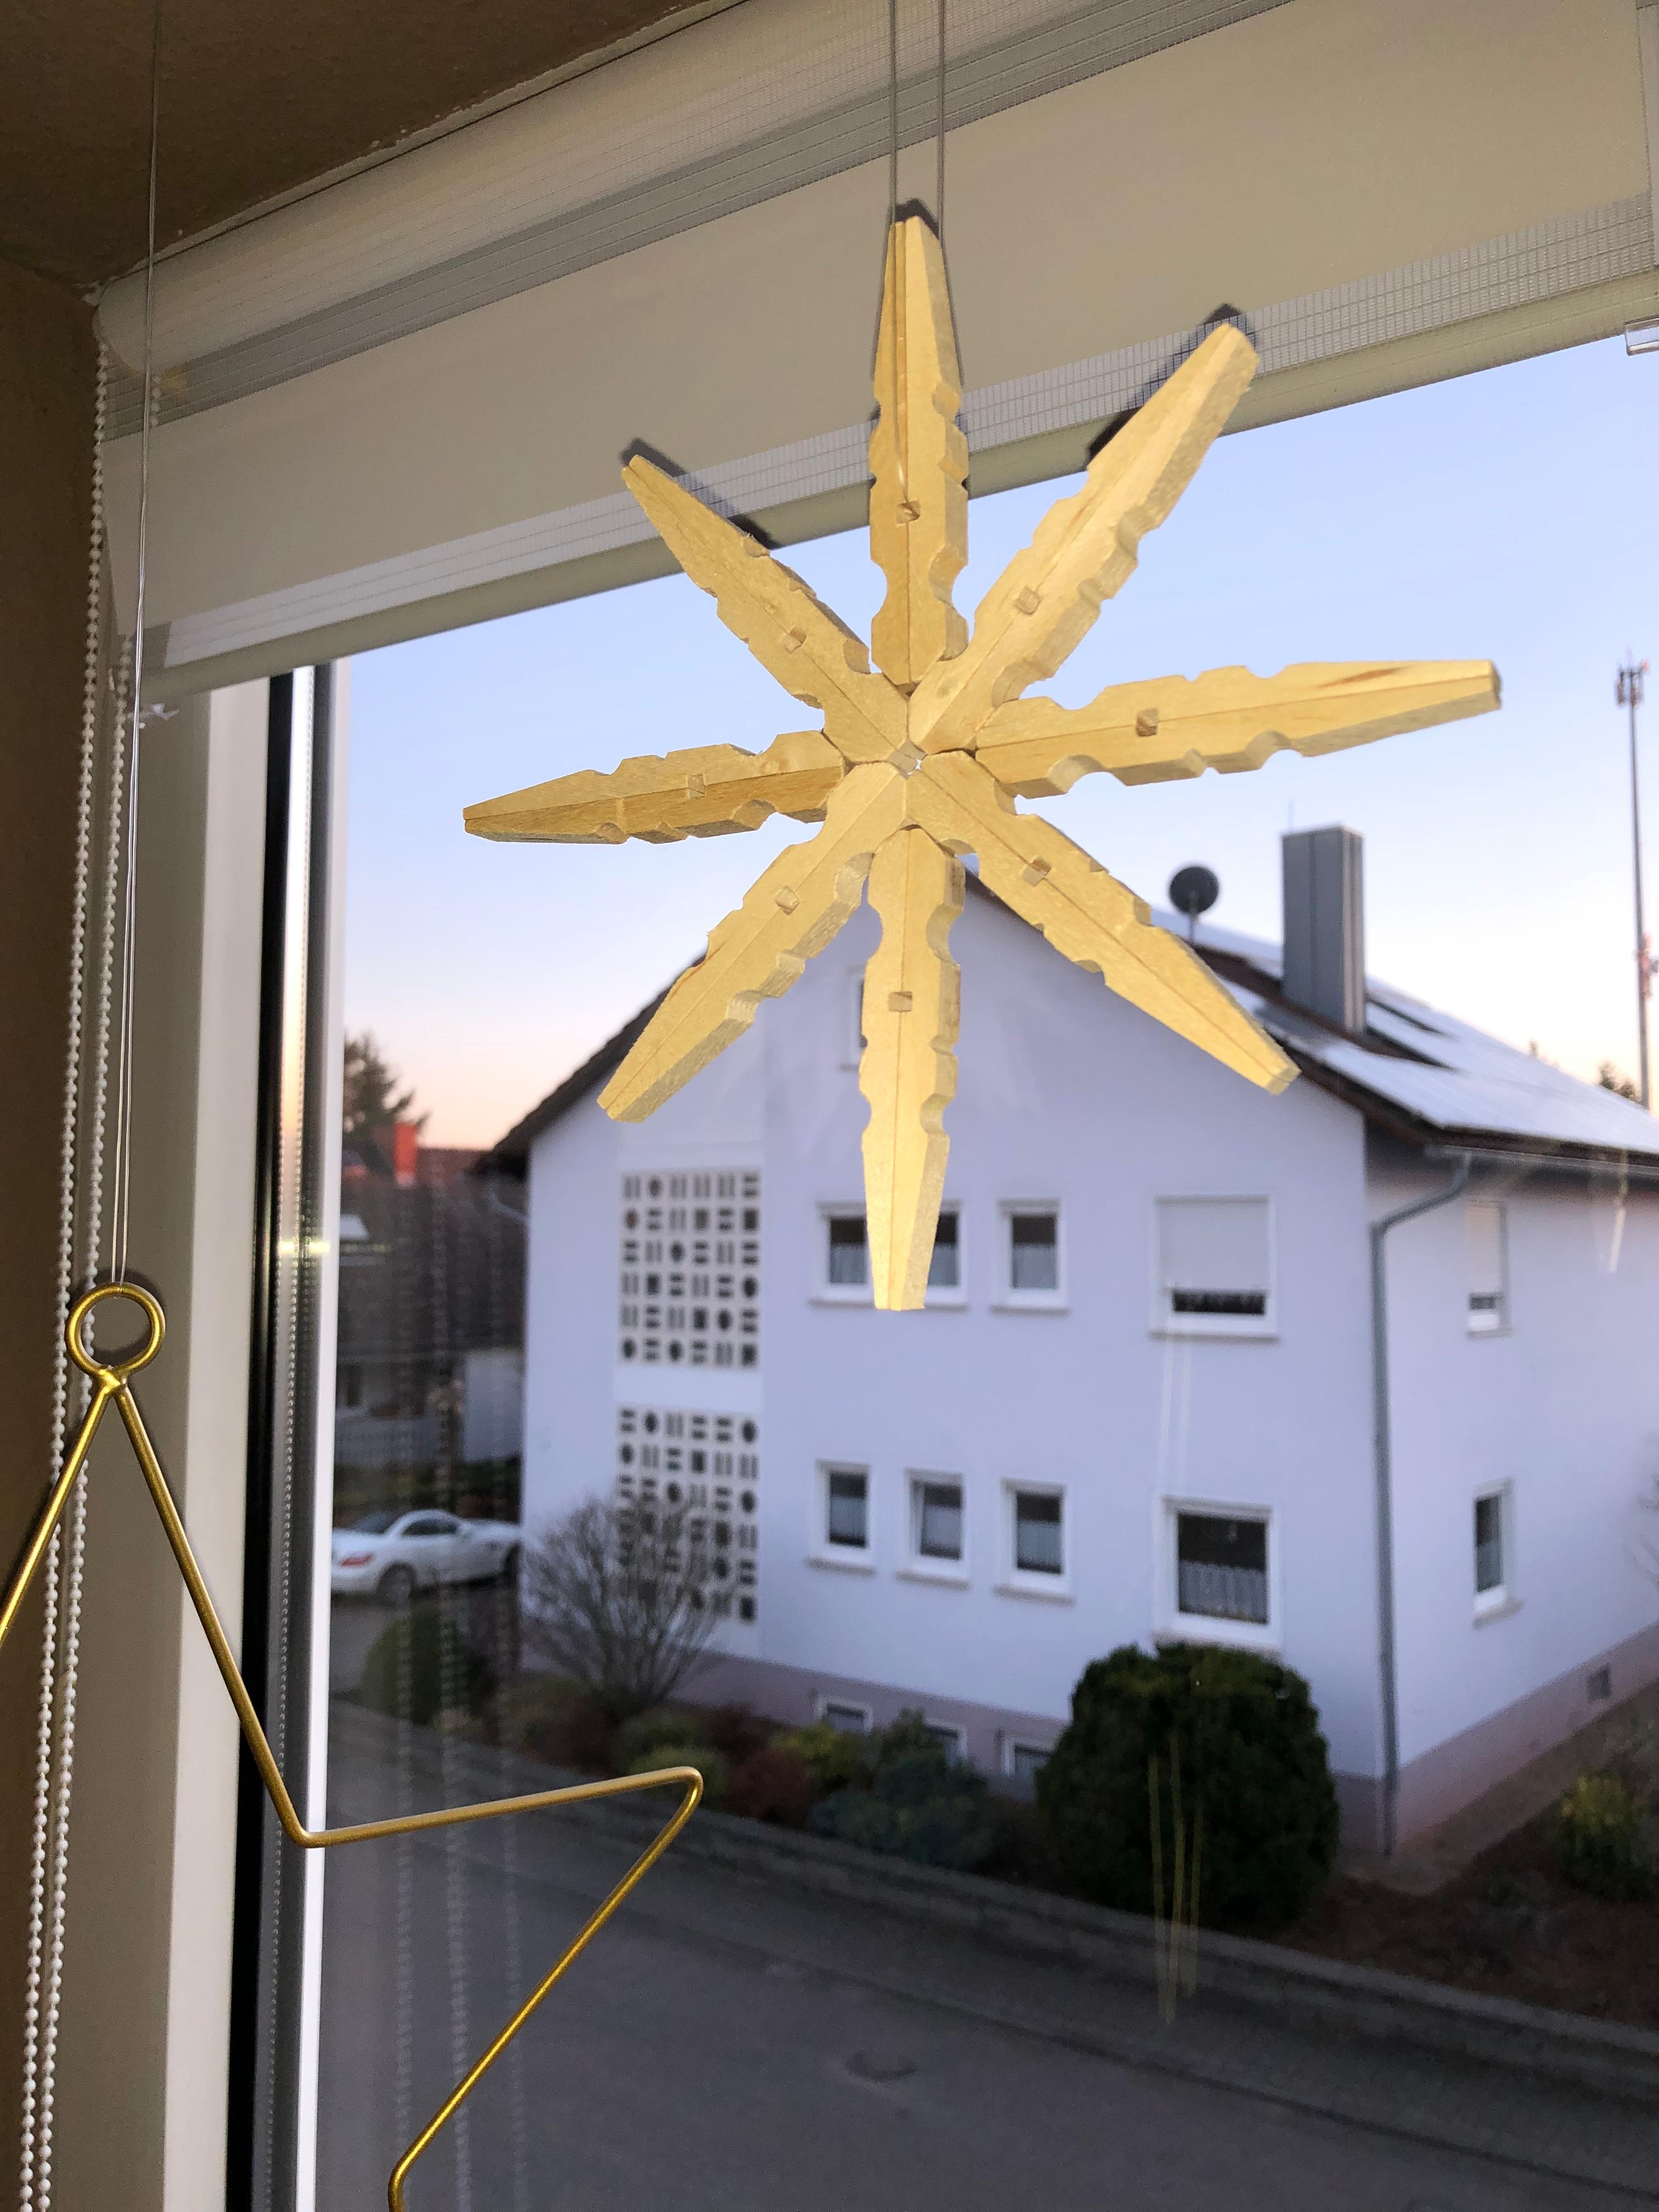 Neuzugang im Fenster. #snowflake #weihnachten #wäscheklammerdiy